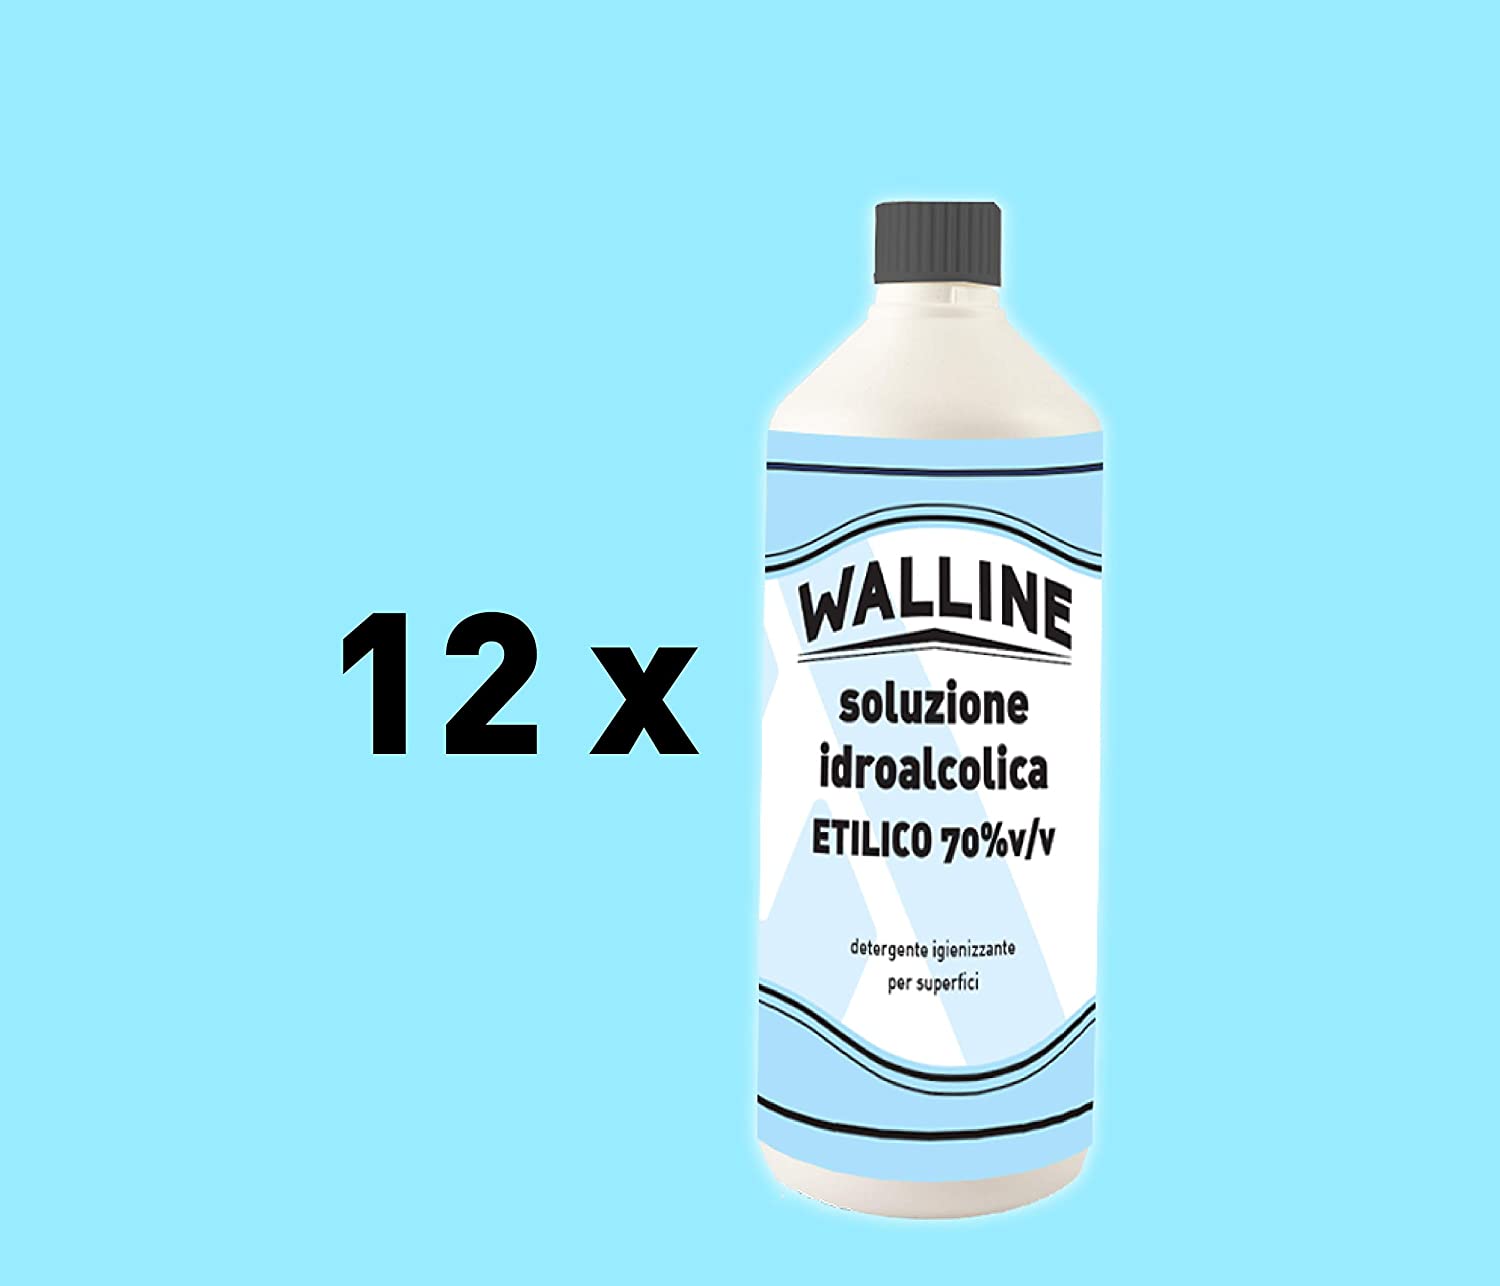 KIT Walline Ricarica - 12 x Soluzione Idroalcolica Ricarica Alcol Etilico 70% v/v Per Superfici 12 lt senza spruzzatore